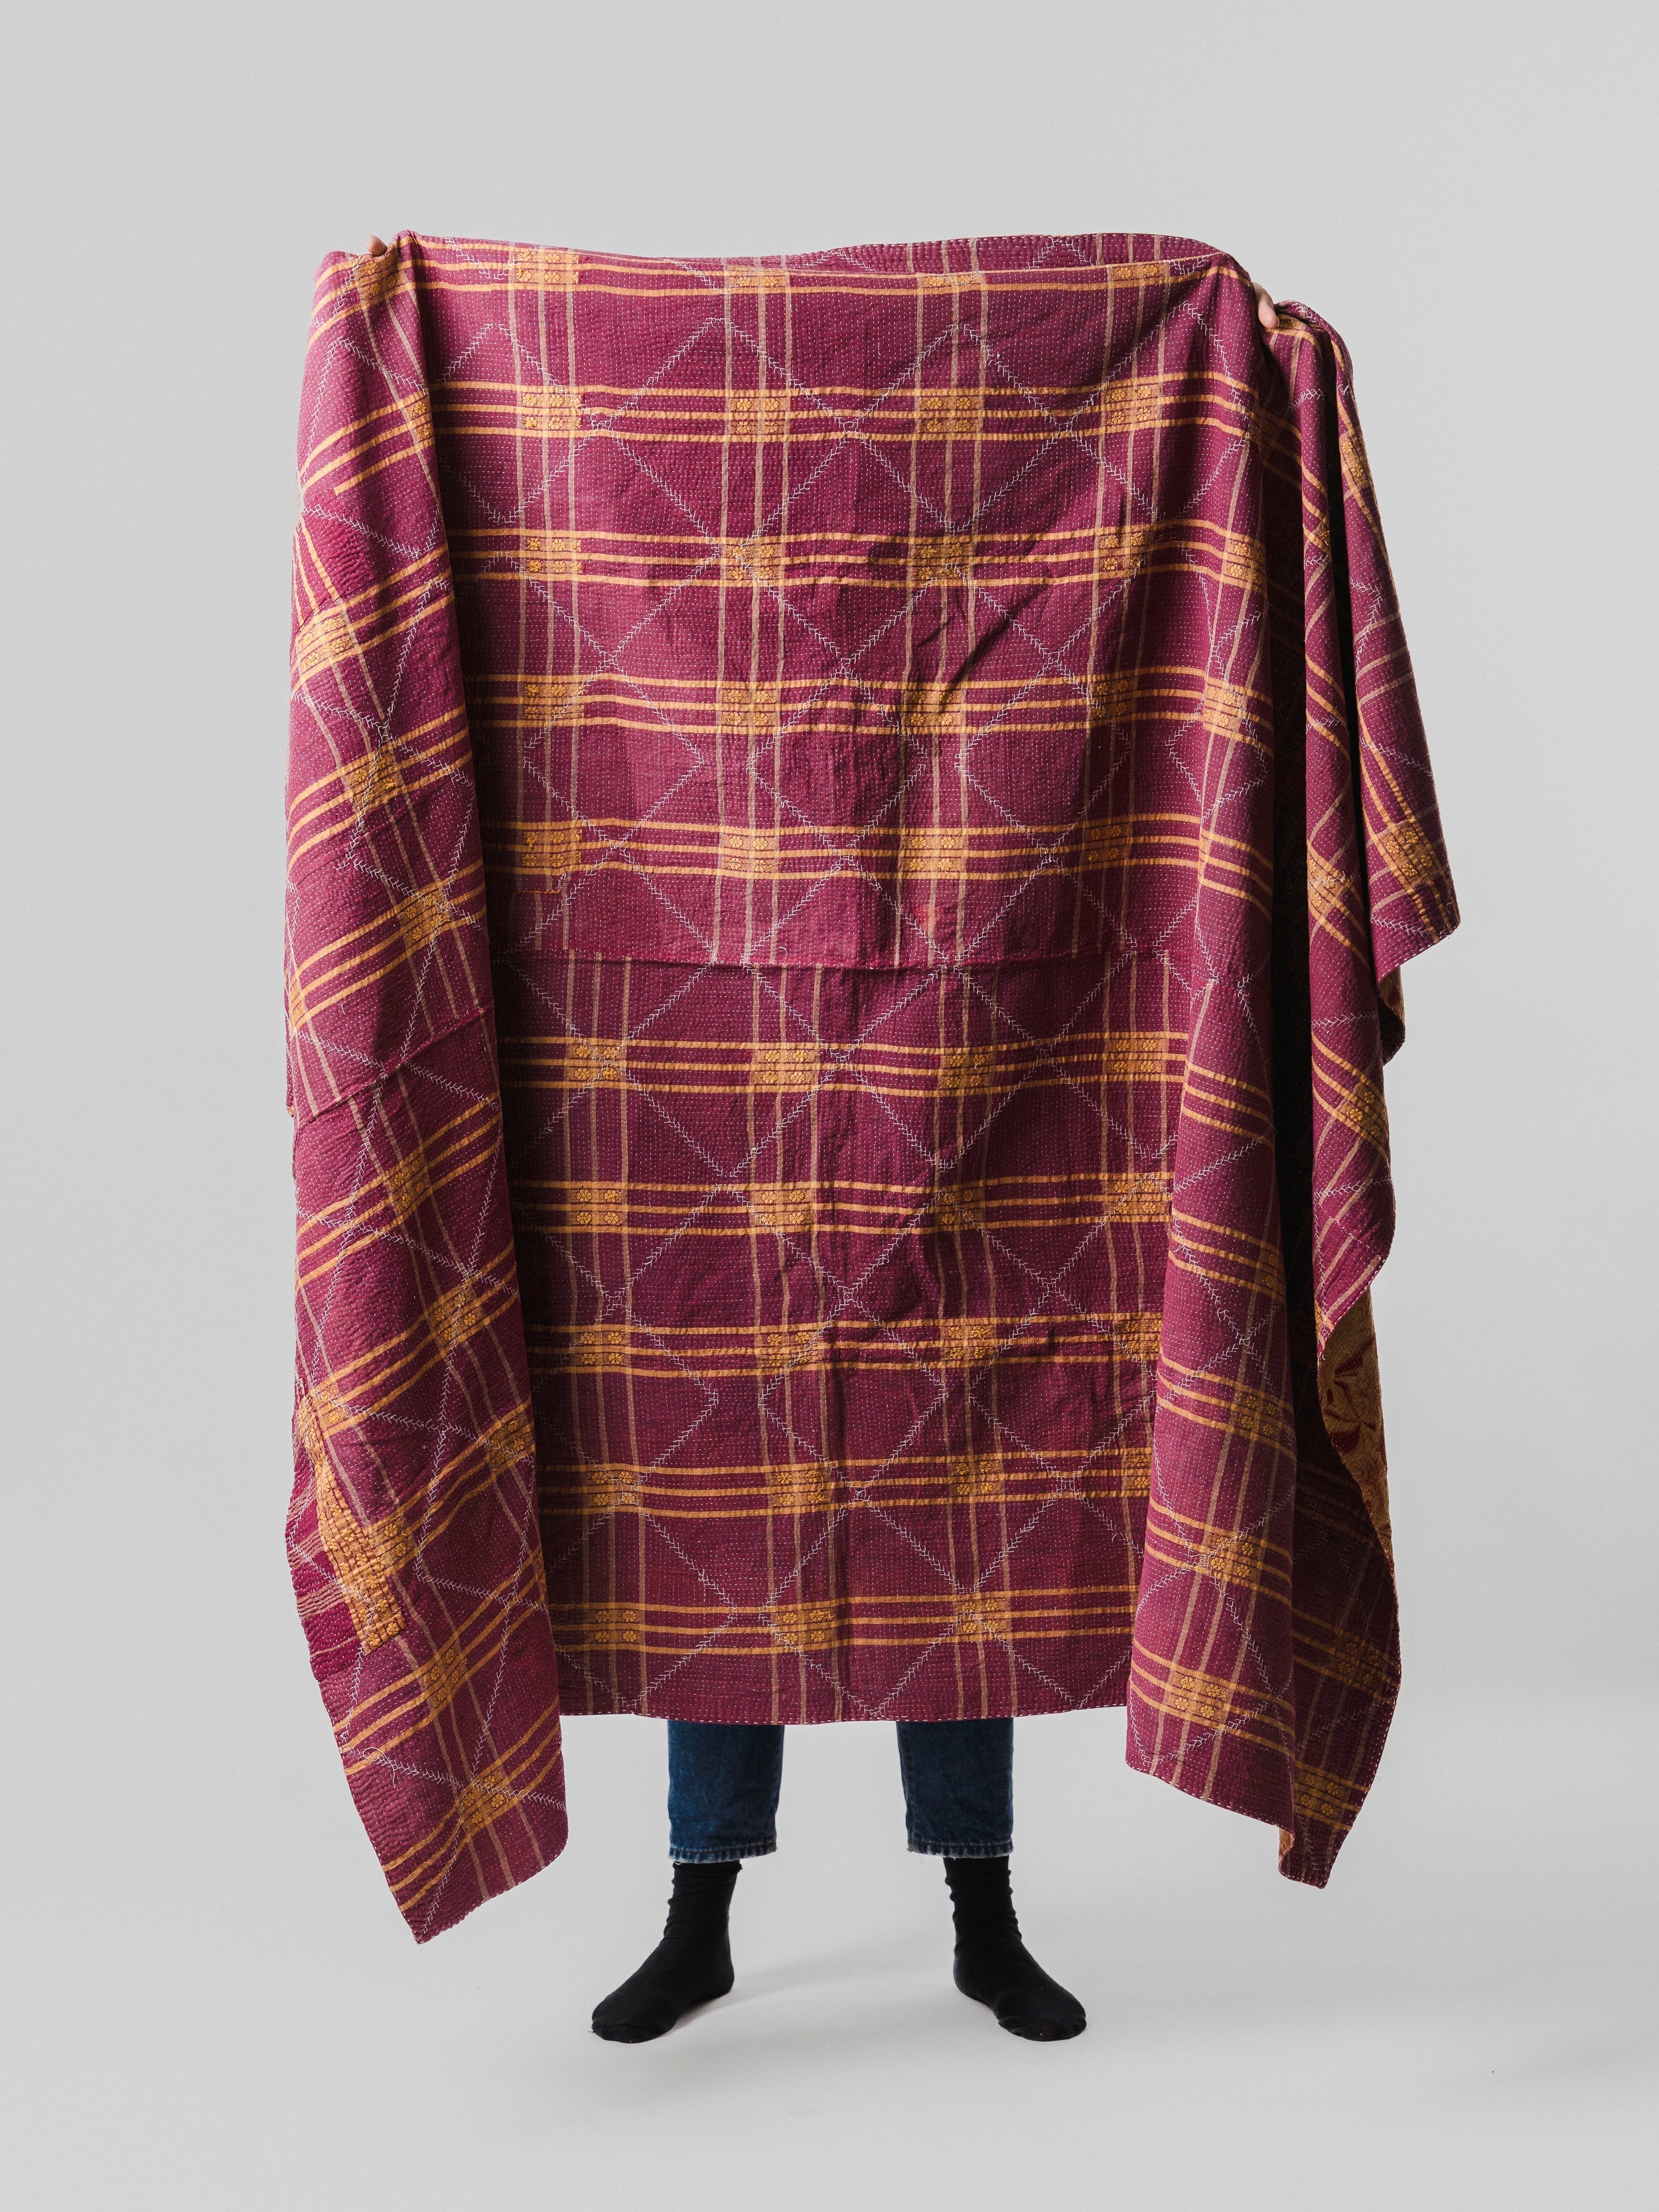 Vintage Embroidered Kantha Blanket 